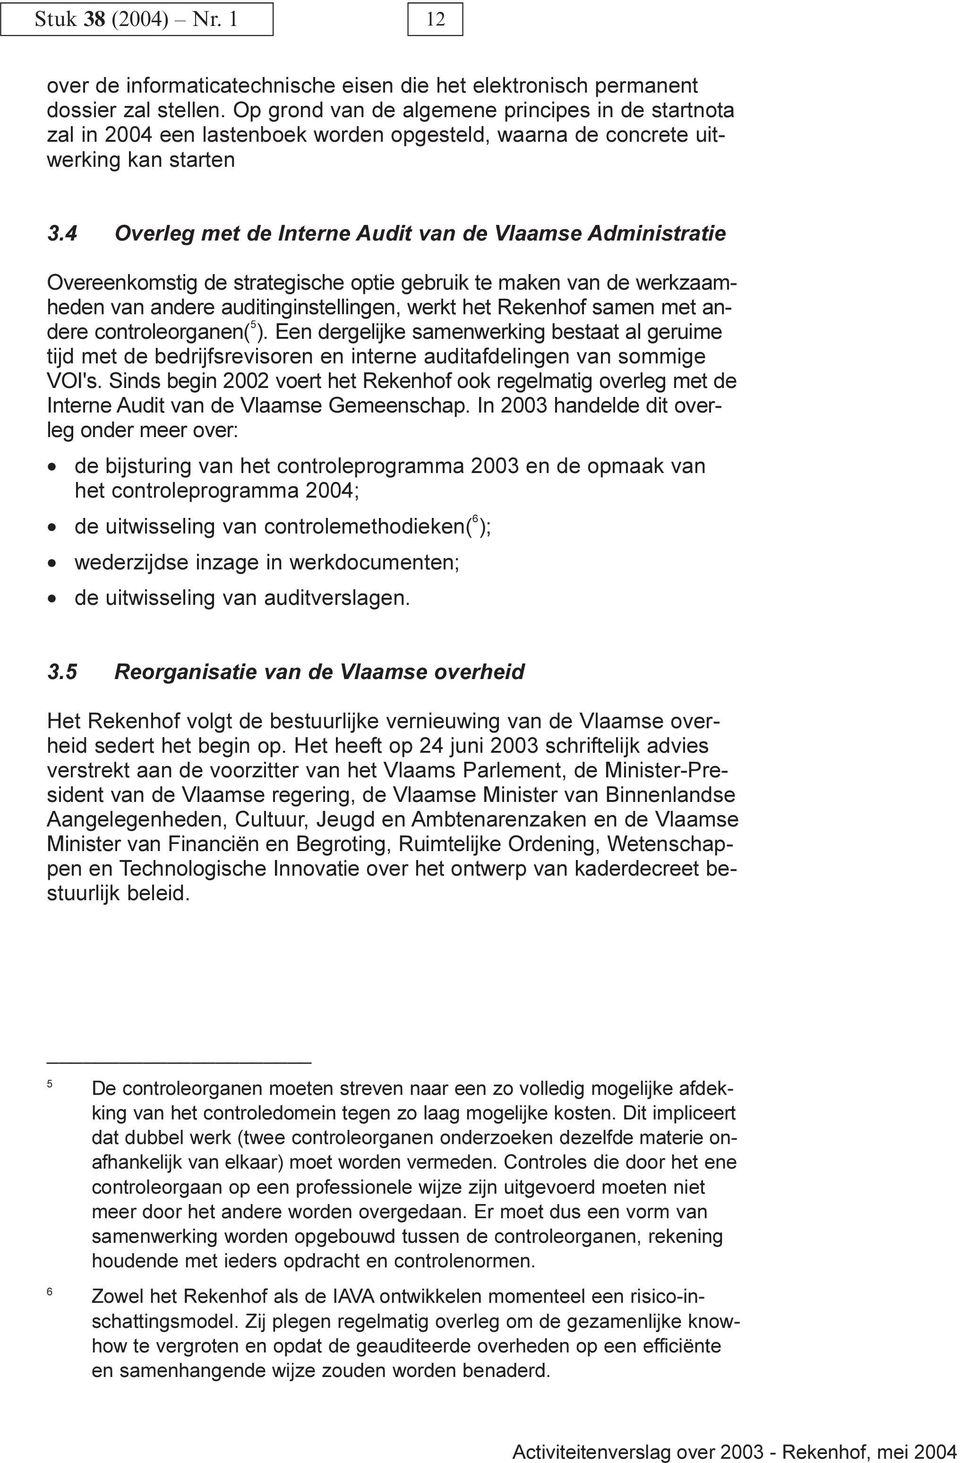 4Overleg met de Interne Audit van de Vlaamse Administratie Overeenkomstig de strategische optie gebruik te maken van de werkzaamheden van andere auditinginstellingen, werkt het Rekenhof samen met